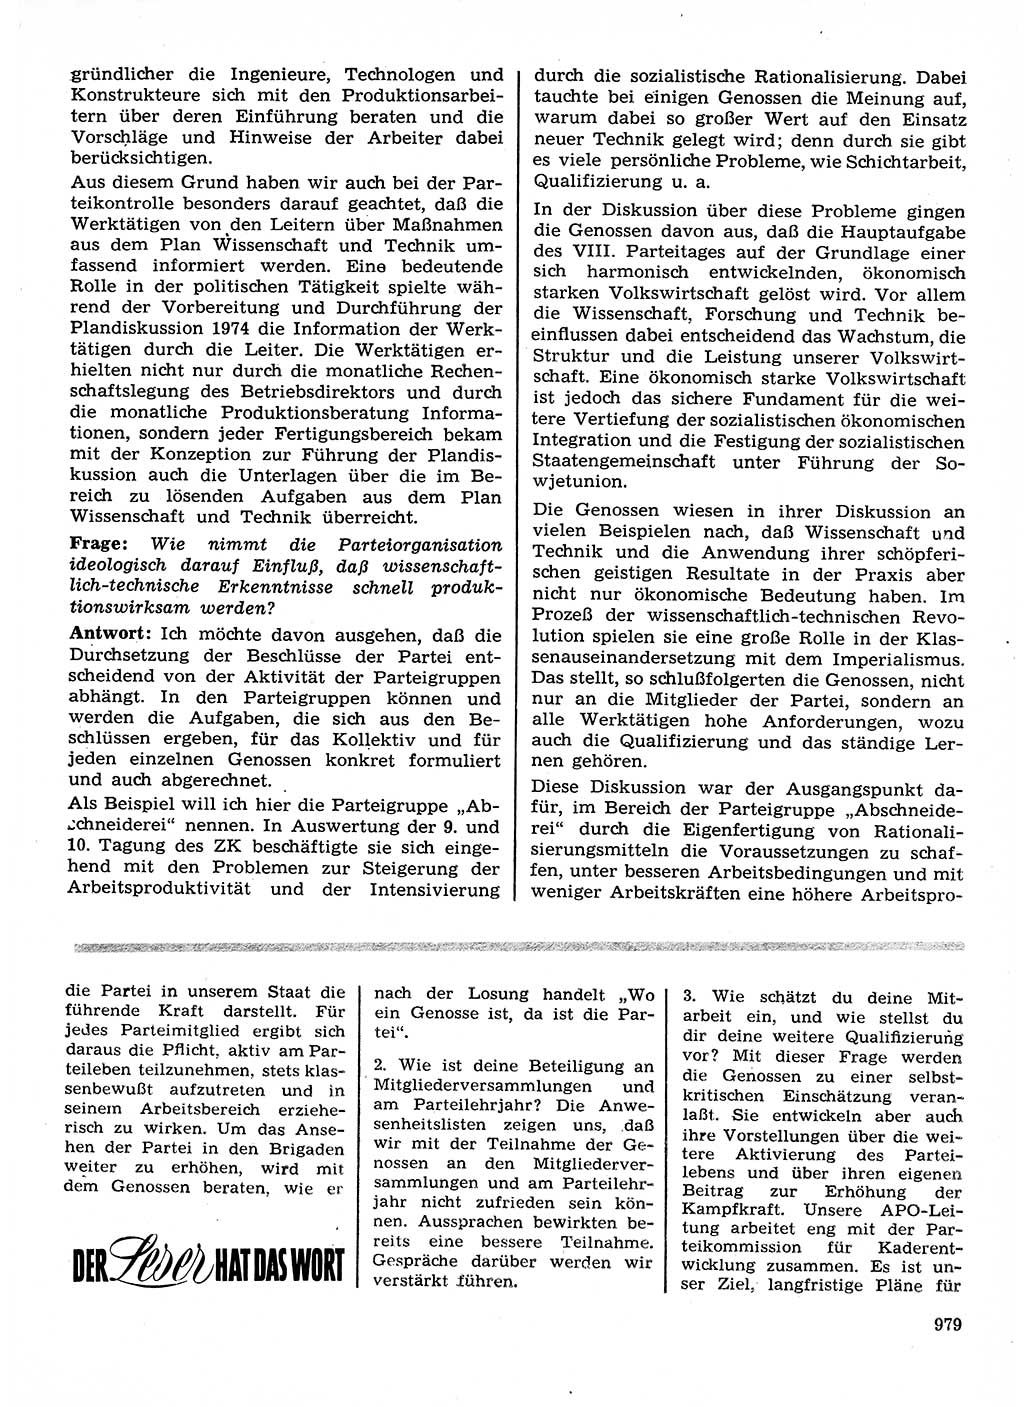 Neuer Weg (NW), Organ des Zentralkomitees (ZK) der SED (Sozialistische Einheitspartei Deutschlands) für Fragen des Parteilebens, 28. Jahrgang [Deutsche Demokratische Republik (DDR)] 1973, Seite 979 (NW ZK SED DDR 1973, S. 979)